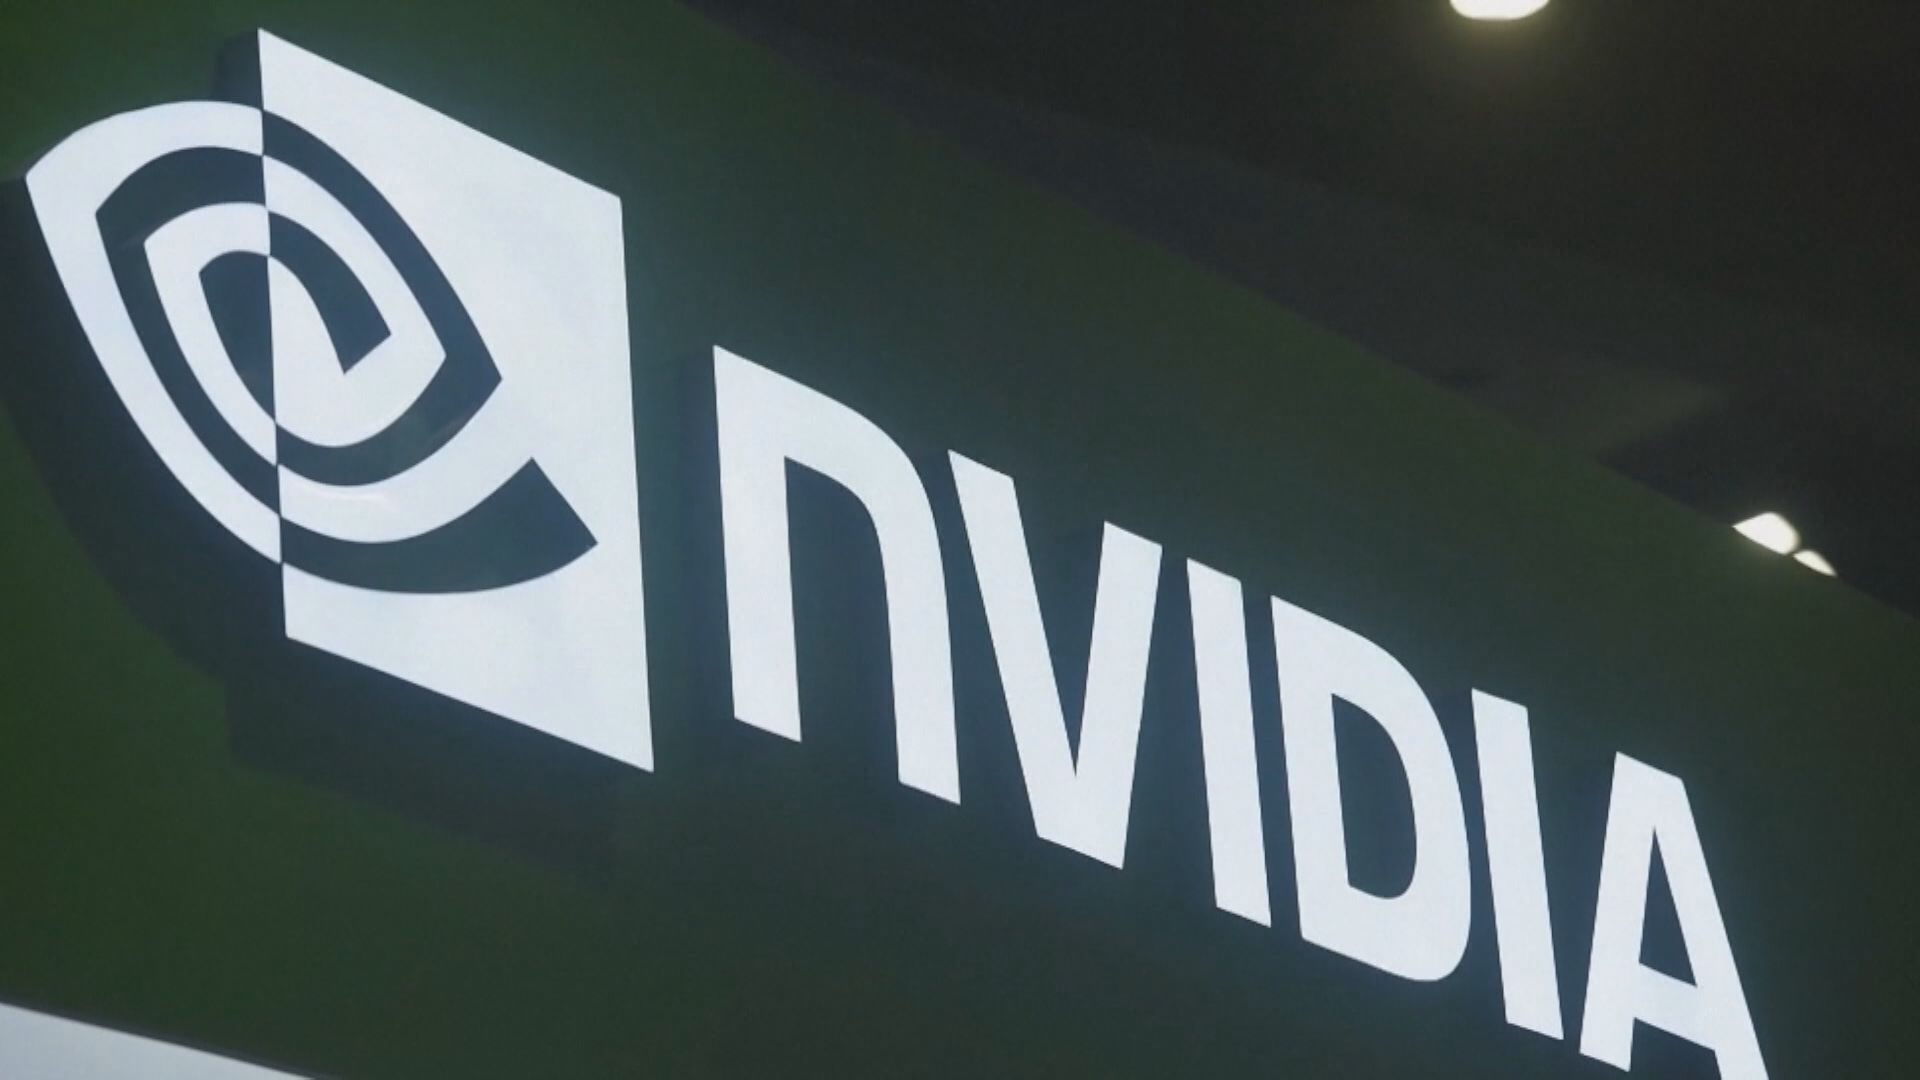 【出口新規】WSJ:Nvidia或取消50億元美元對華AI晶片定單